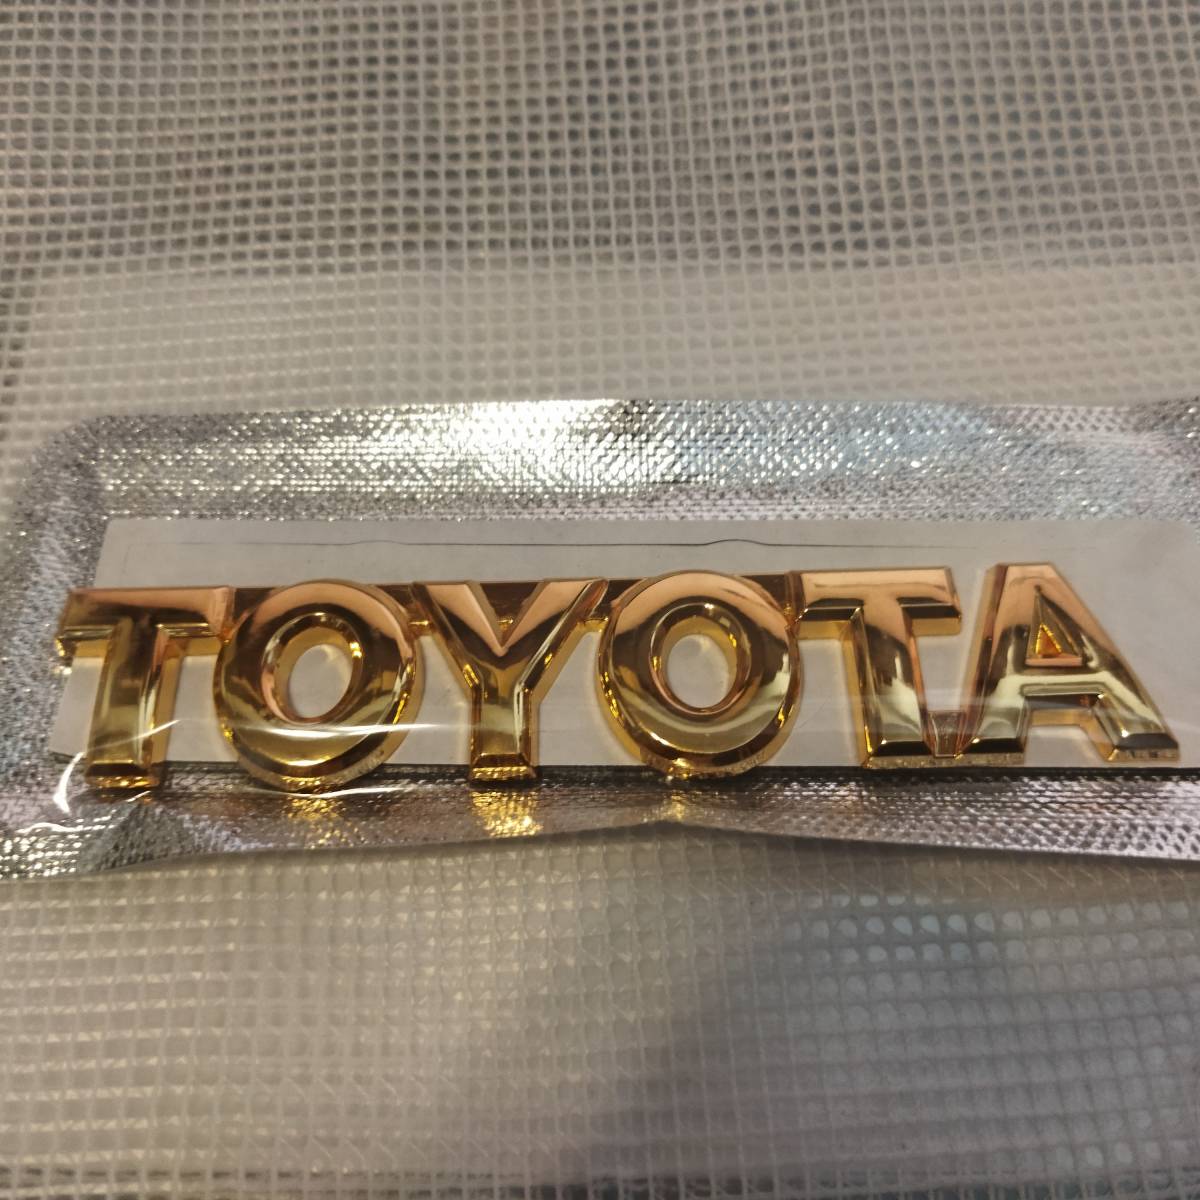 【送料込】TOYOTA 3Dエンブレム(両面テープ付) ゴールド 縦2.4cm×横12cm トヨタ 金属製 の画像1